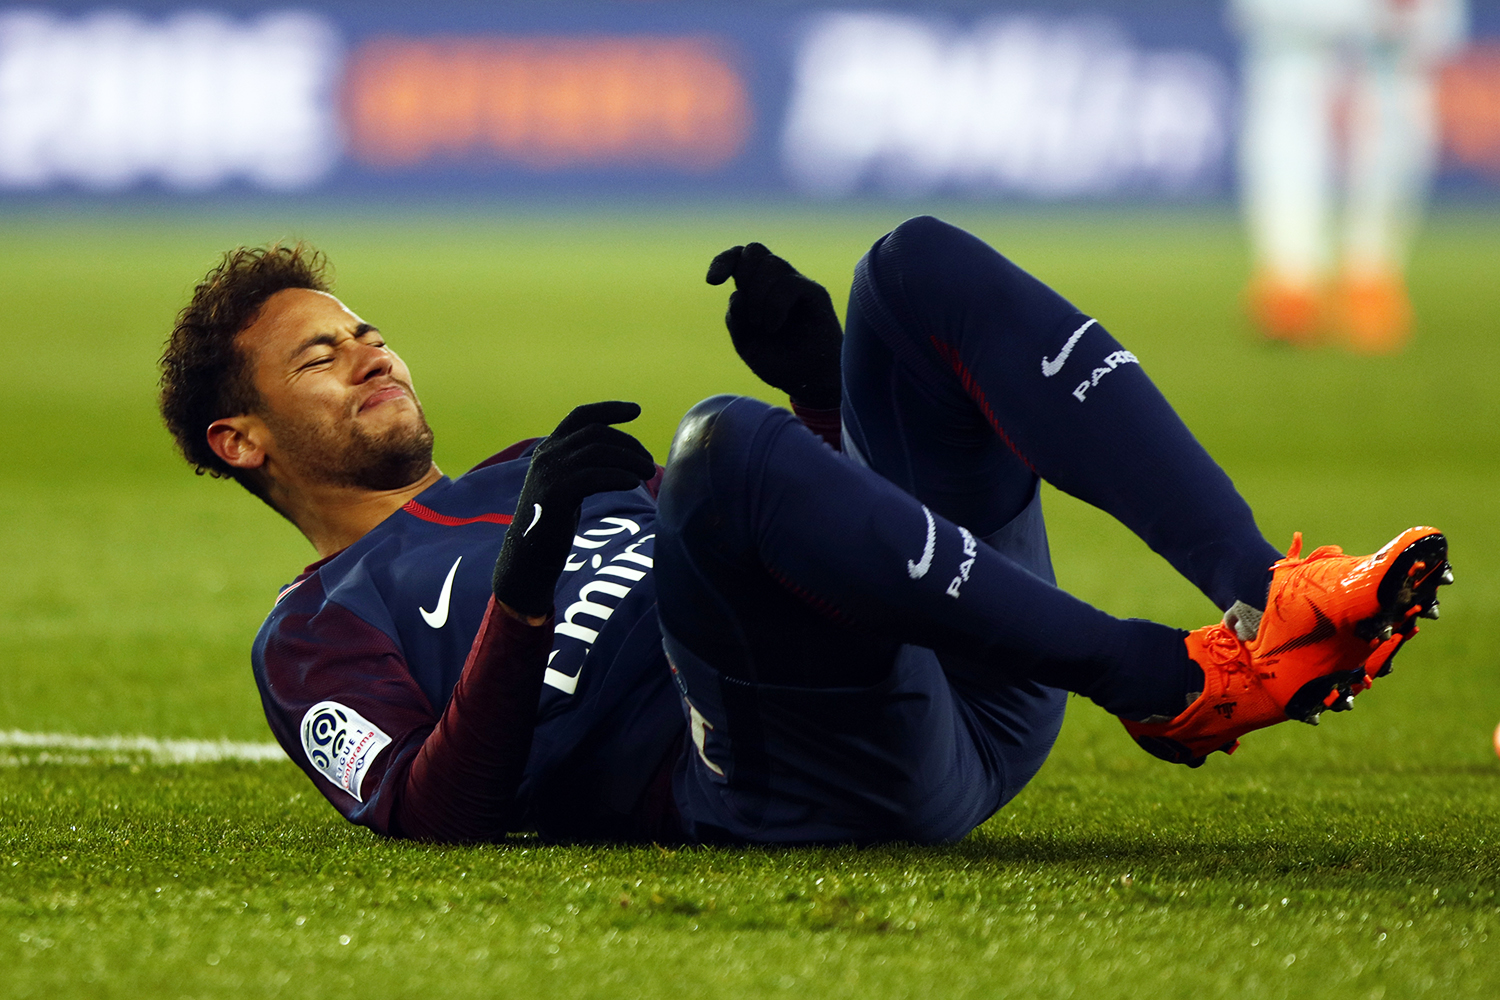 Neymar sofre lesão no tornozelo durante partida entre PSG e Olympique de Marselha - 25/02/2018